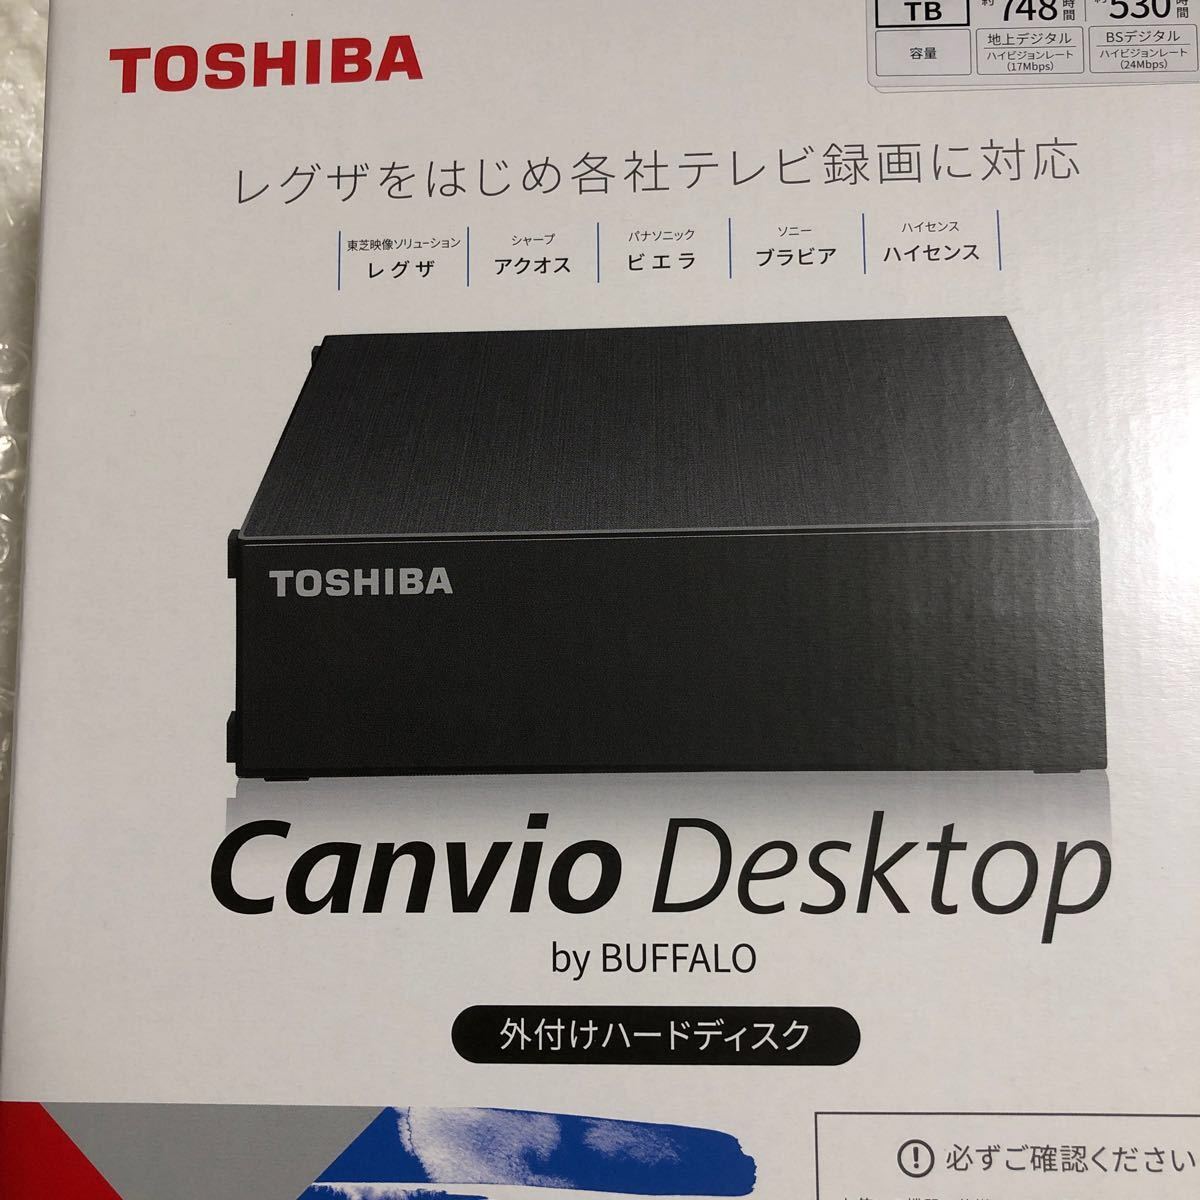 TOSHIBA 6TB・外付けHDD・HD-TDA6U3-B/N 【大容量６TB・HDD】by BUFFALO